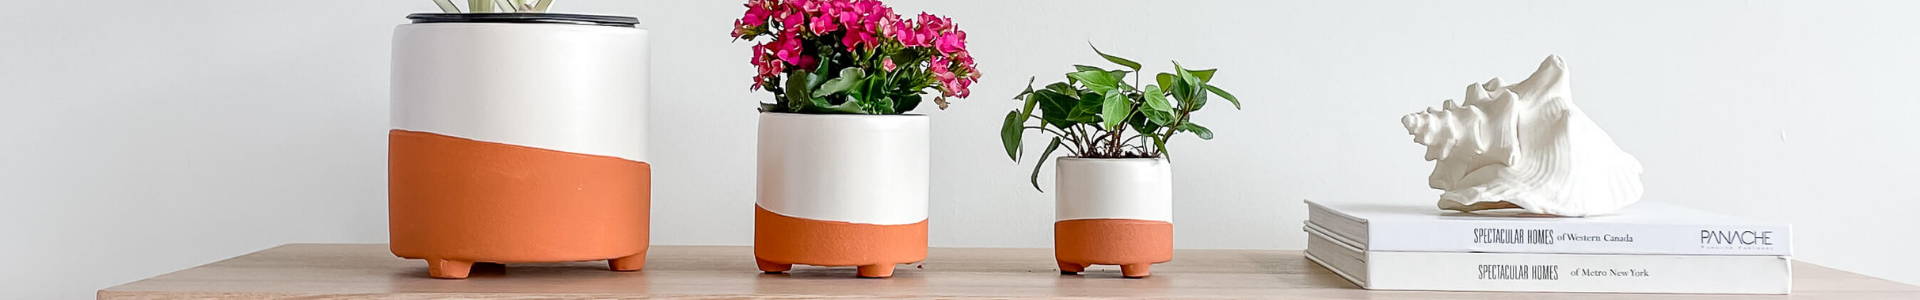 Hycroft Home Decor - Handmade Ceramic Tabletop Planters